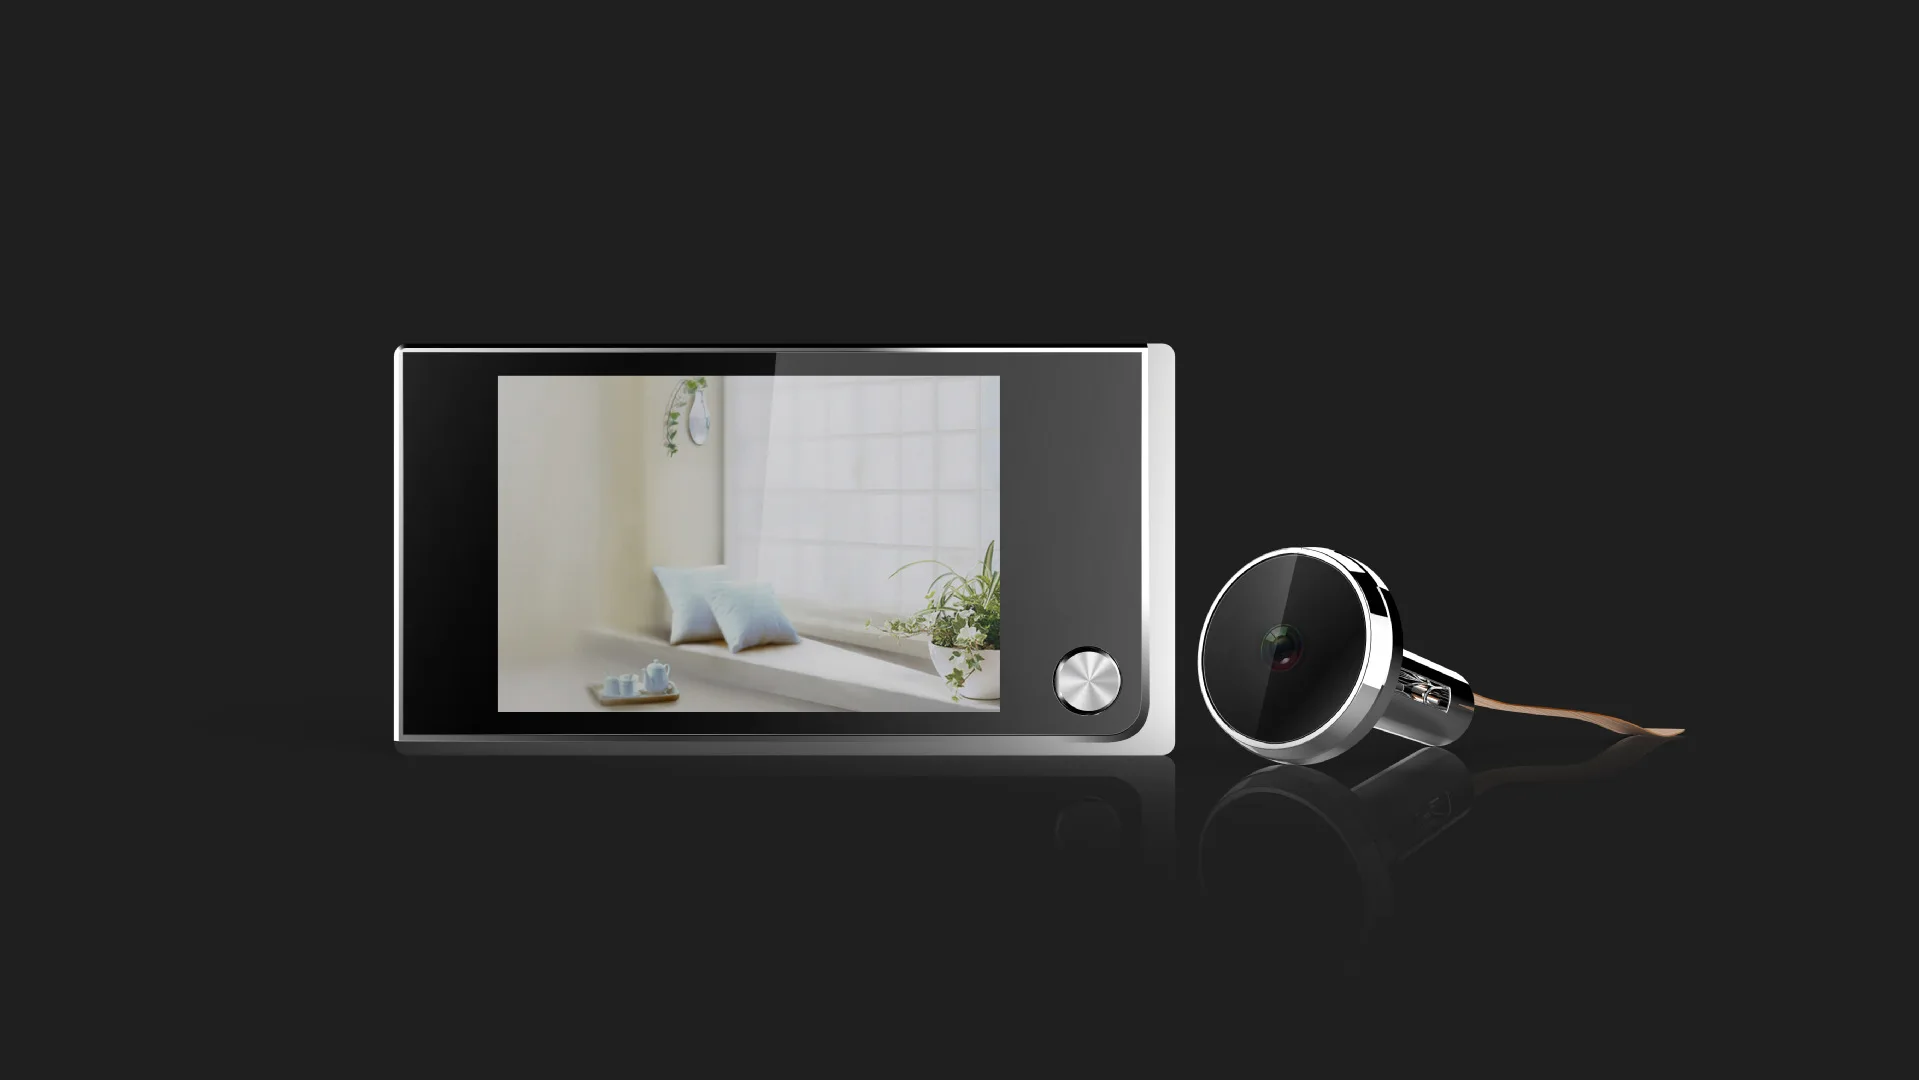 Беспроводной видео дверной звонок 3,5 дюймов широкий угол 130 градусов HD дисплей глазок профессиональная камера безопасности просмотра дверной звонок